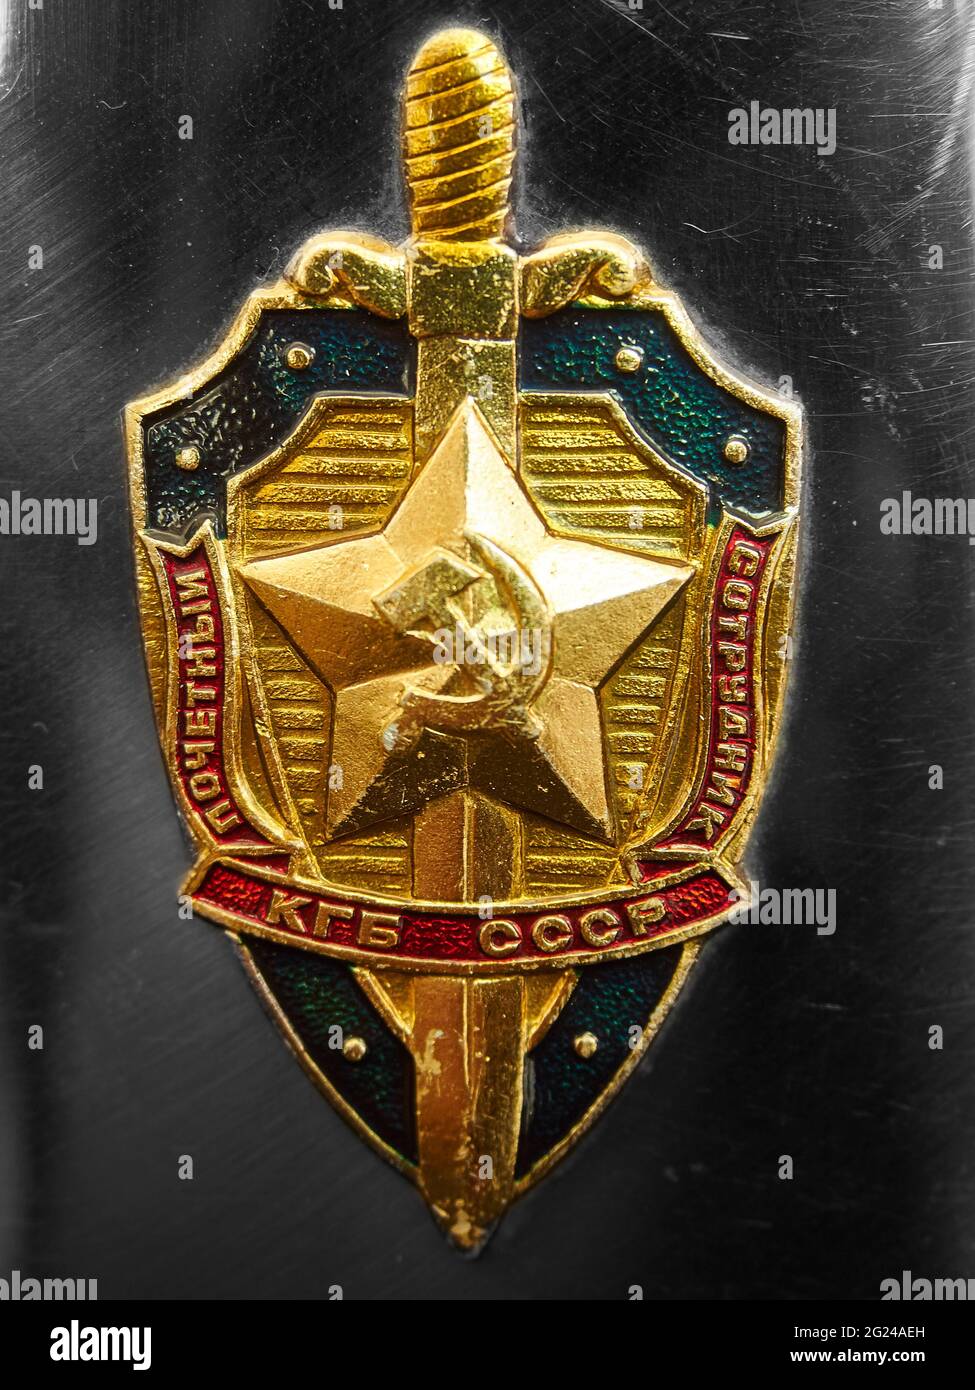 Bildliches, repräsentatives Bild des Abzeichen / Insignien der KGB-Sicherheitsbehörde, angebracht an einer Metallflasche (vom Fotografen selbst) - Metallhintergrund. Stockfoto